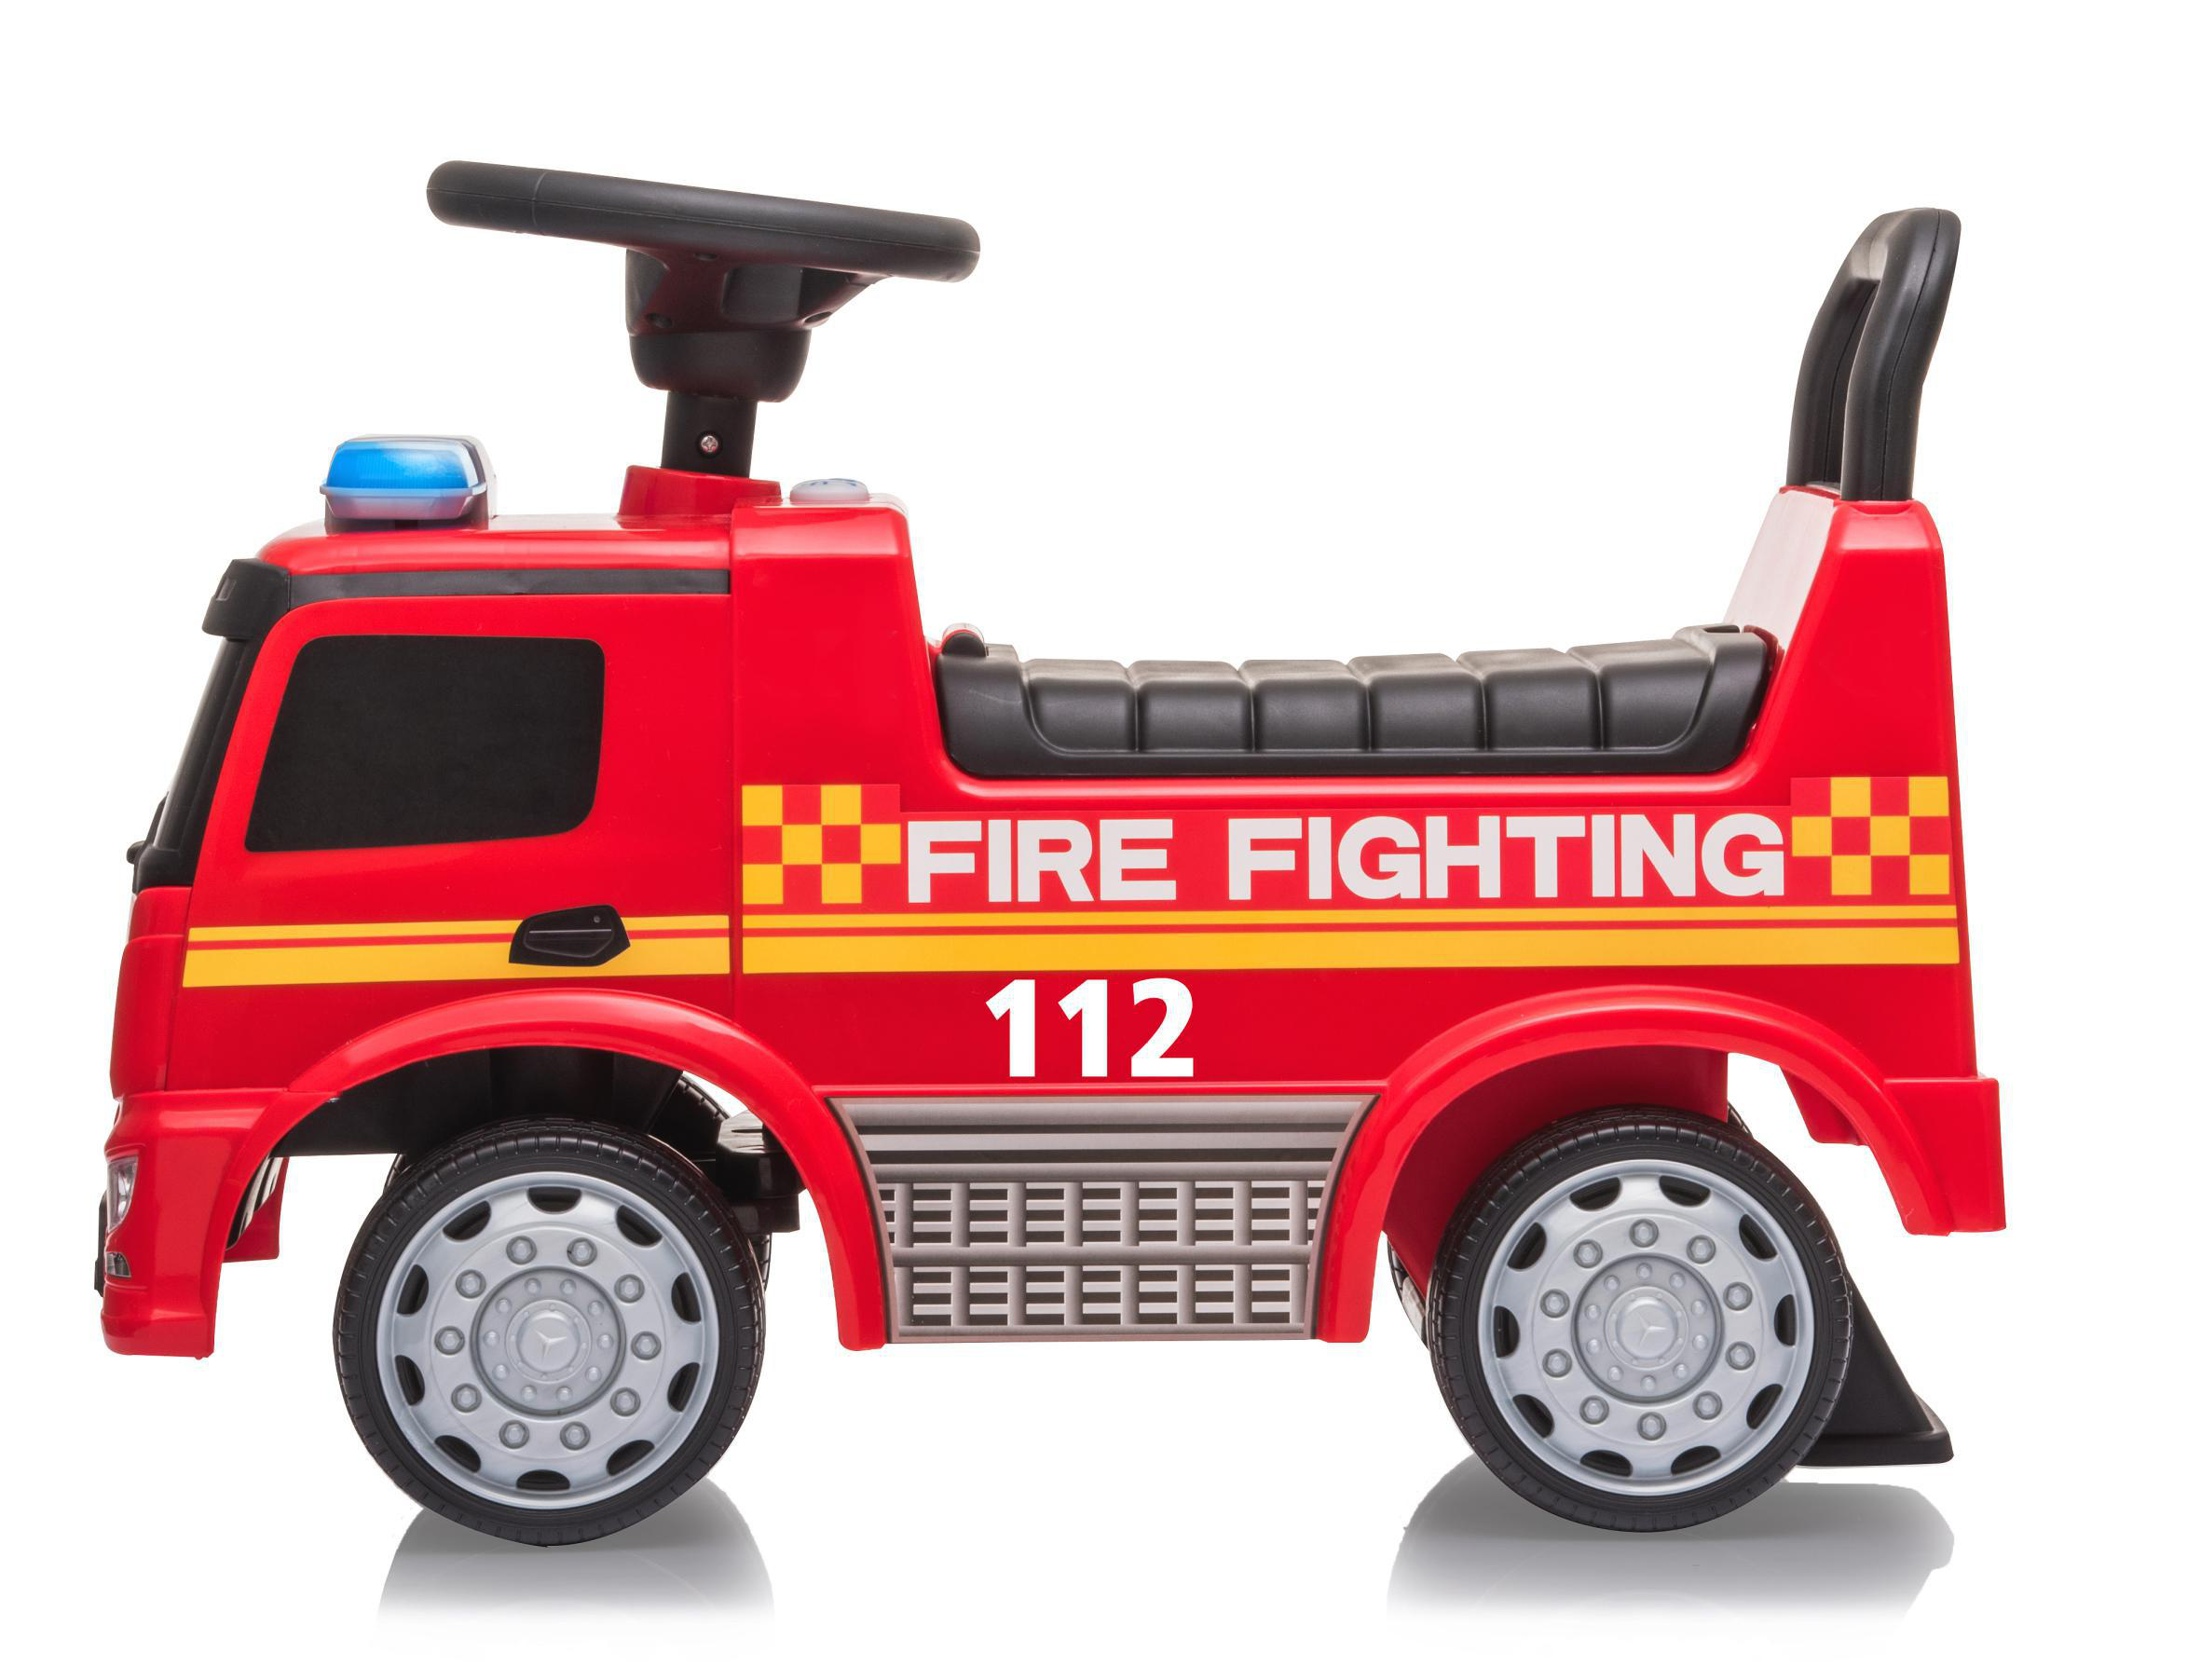 Kinderfahrzeug Mercedes-Benz Feuerwehr Antos Rot Rutscher JAMARA